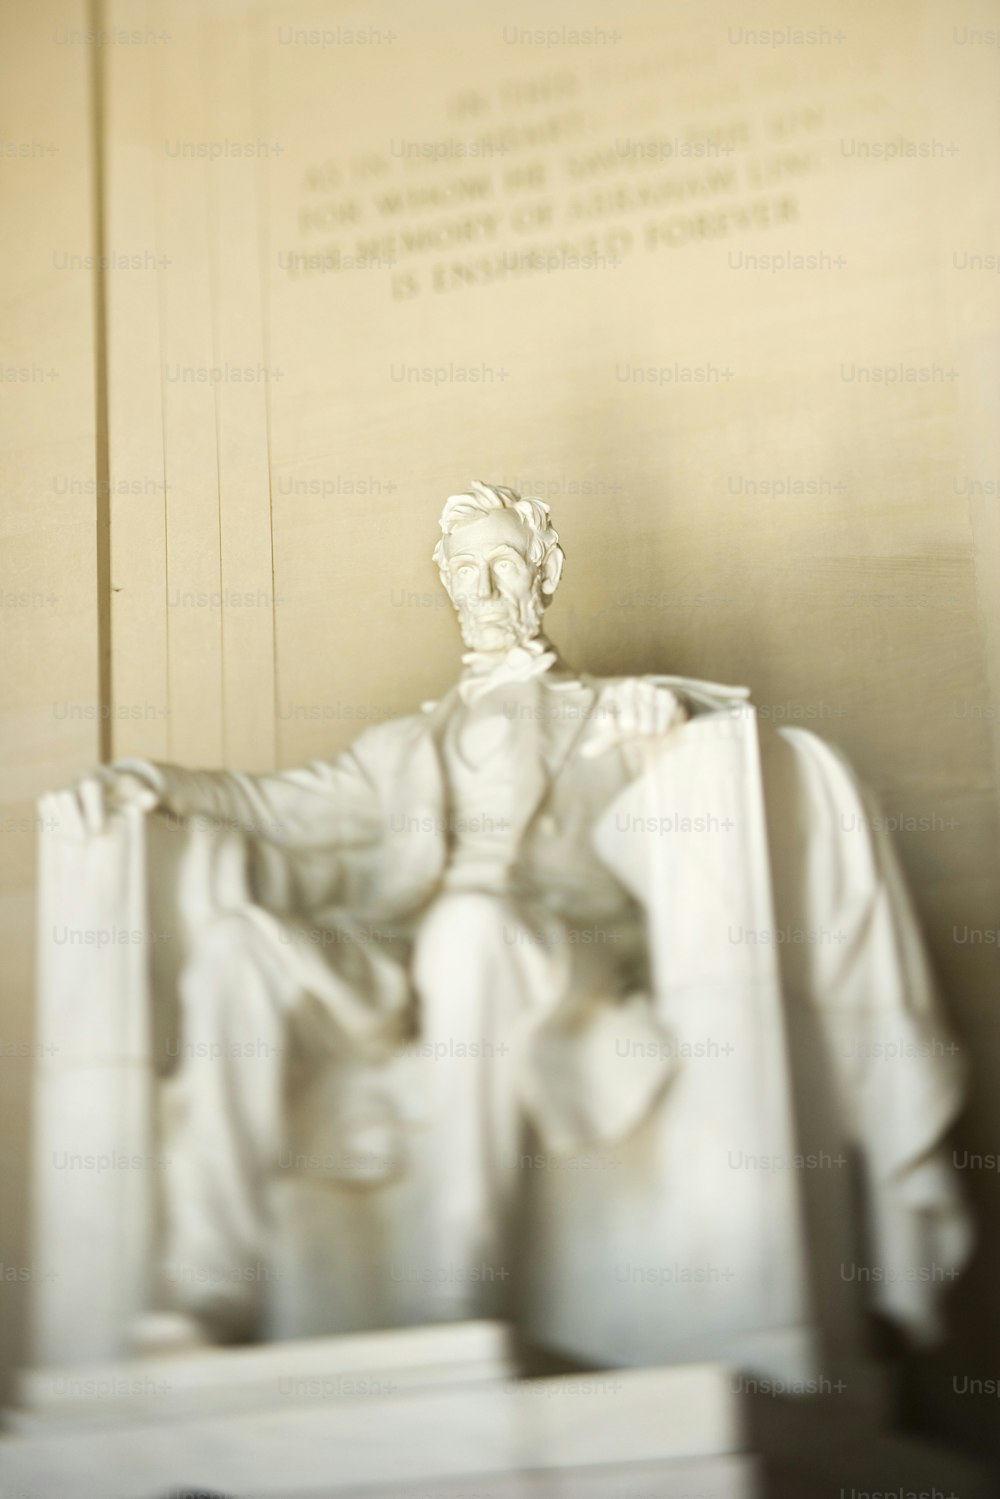 Um close up de uma estátua de Abraham Lincoln